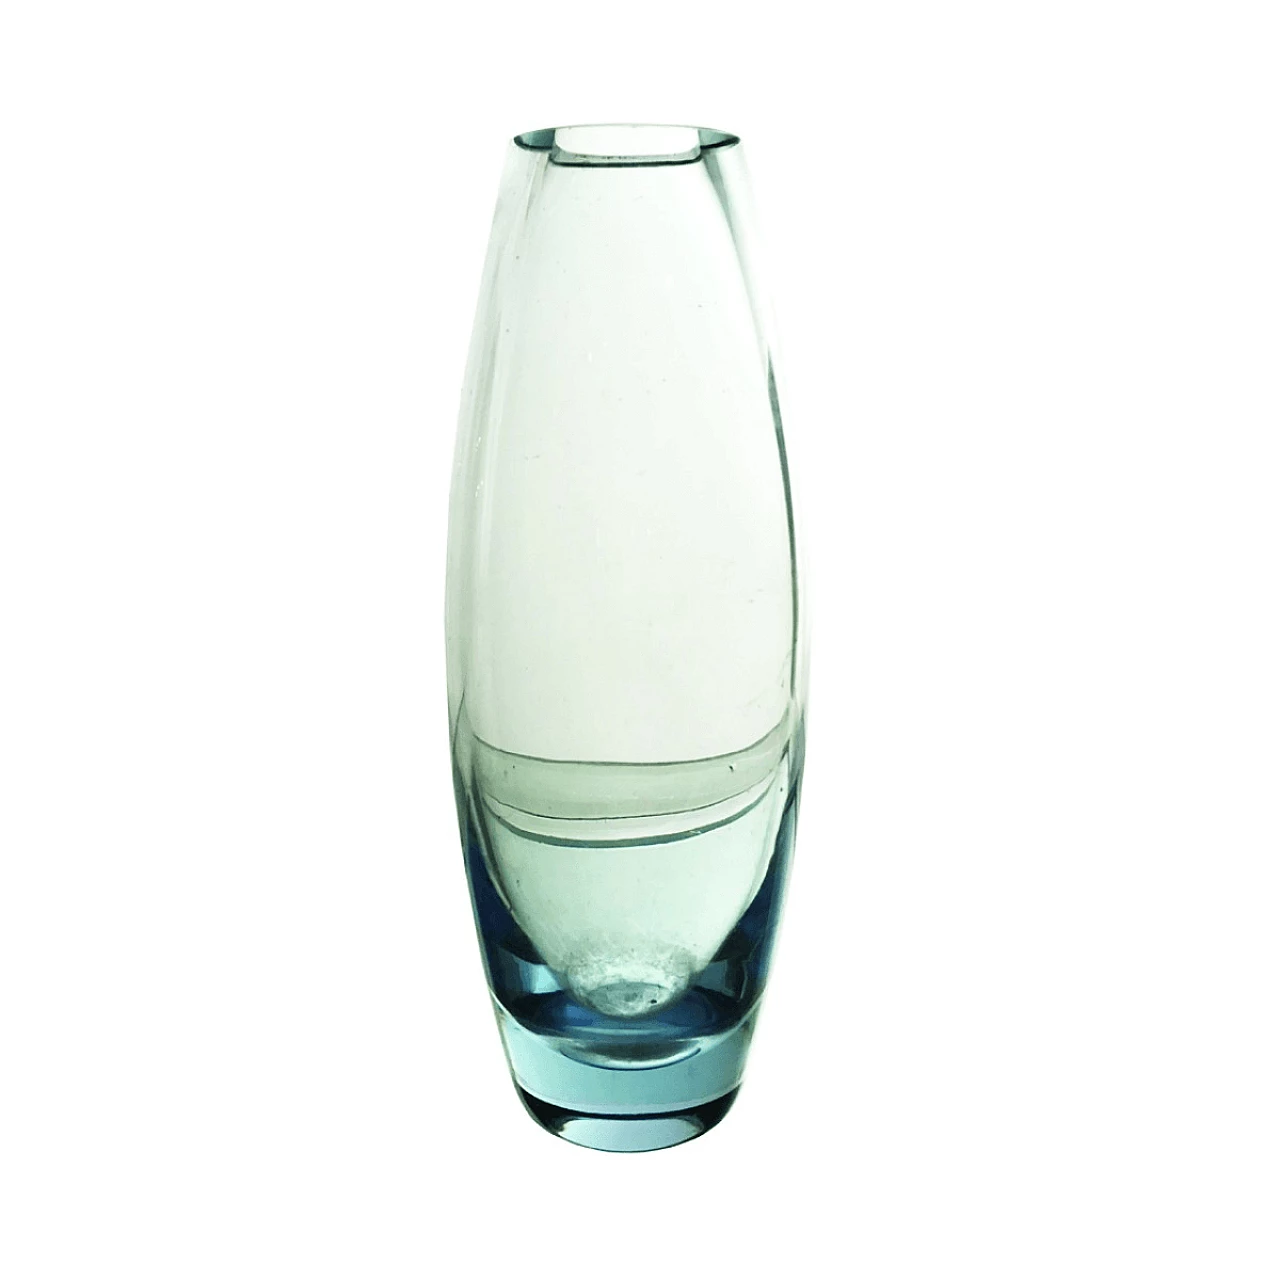 Vase "Torpedovase" by Per Lütken for Holmegaard 1061659